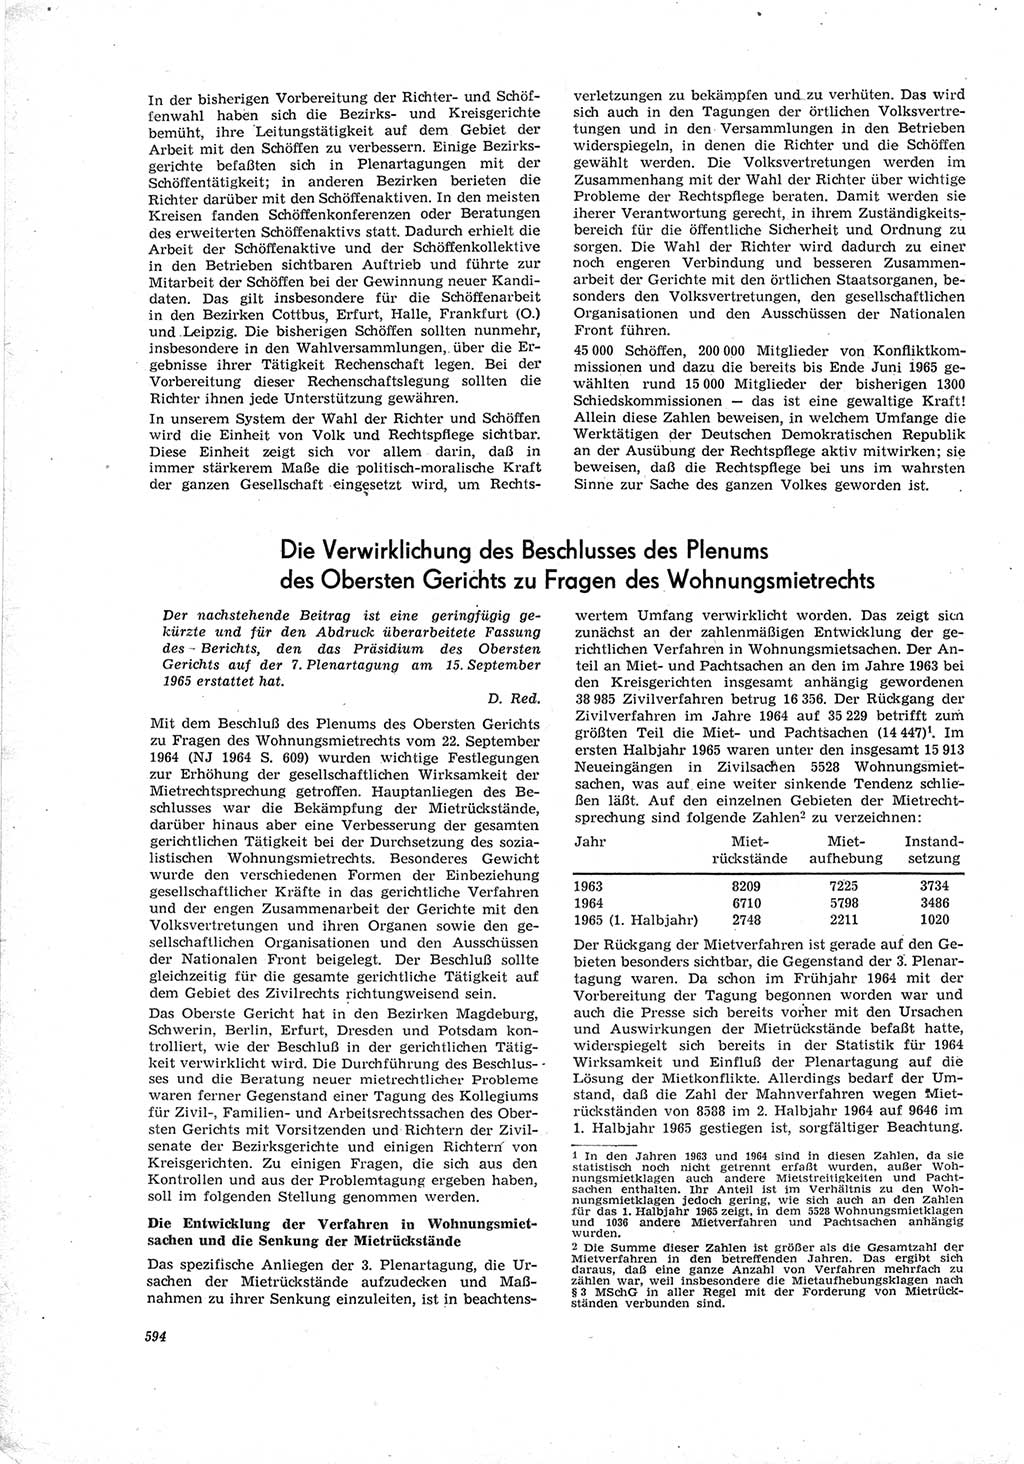 Neue Justiz (NJ), Zeitschrift für Recht und Rechtswissenschaft [Deutsche Demokratische Republik (DDR)], 19. Jahrgang 1965, Seite 594 (NJ DDR 1965, S. 594)